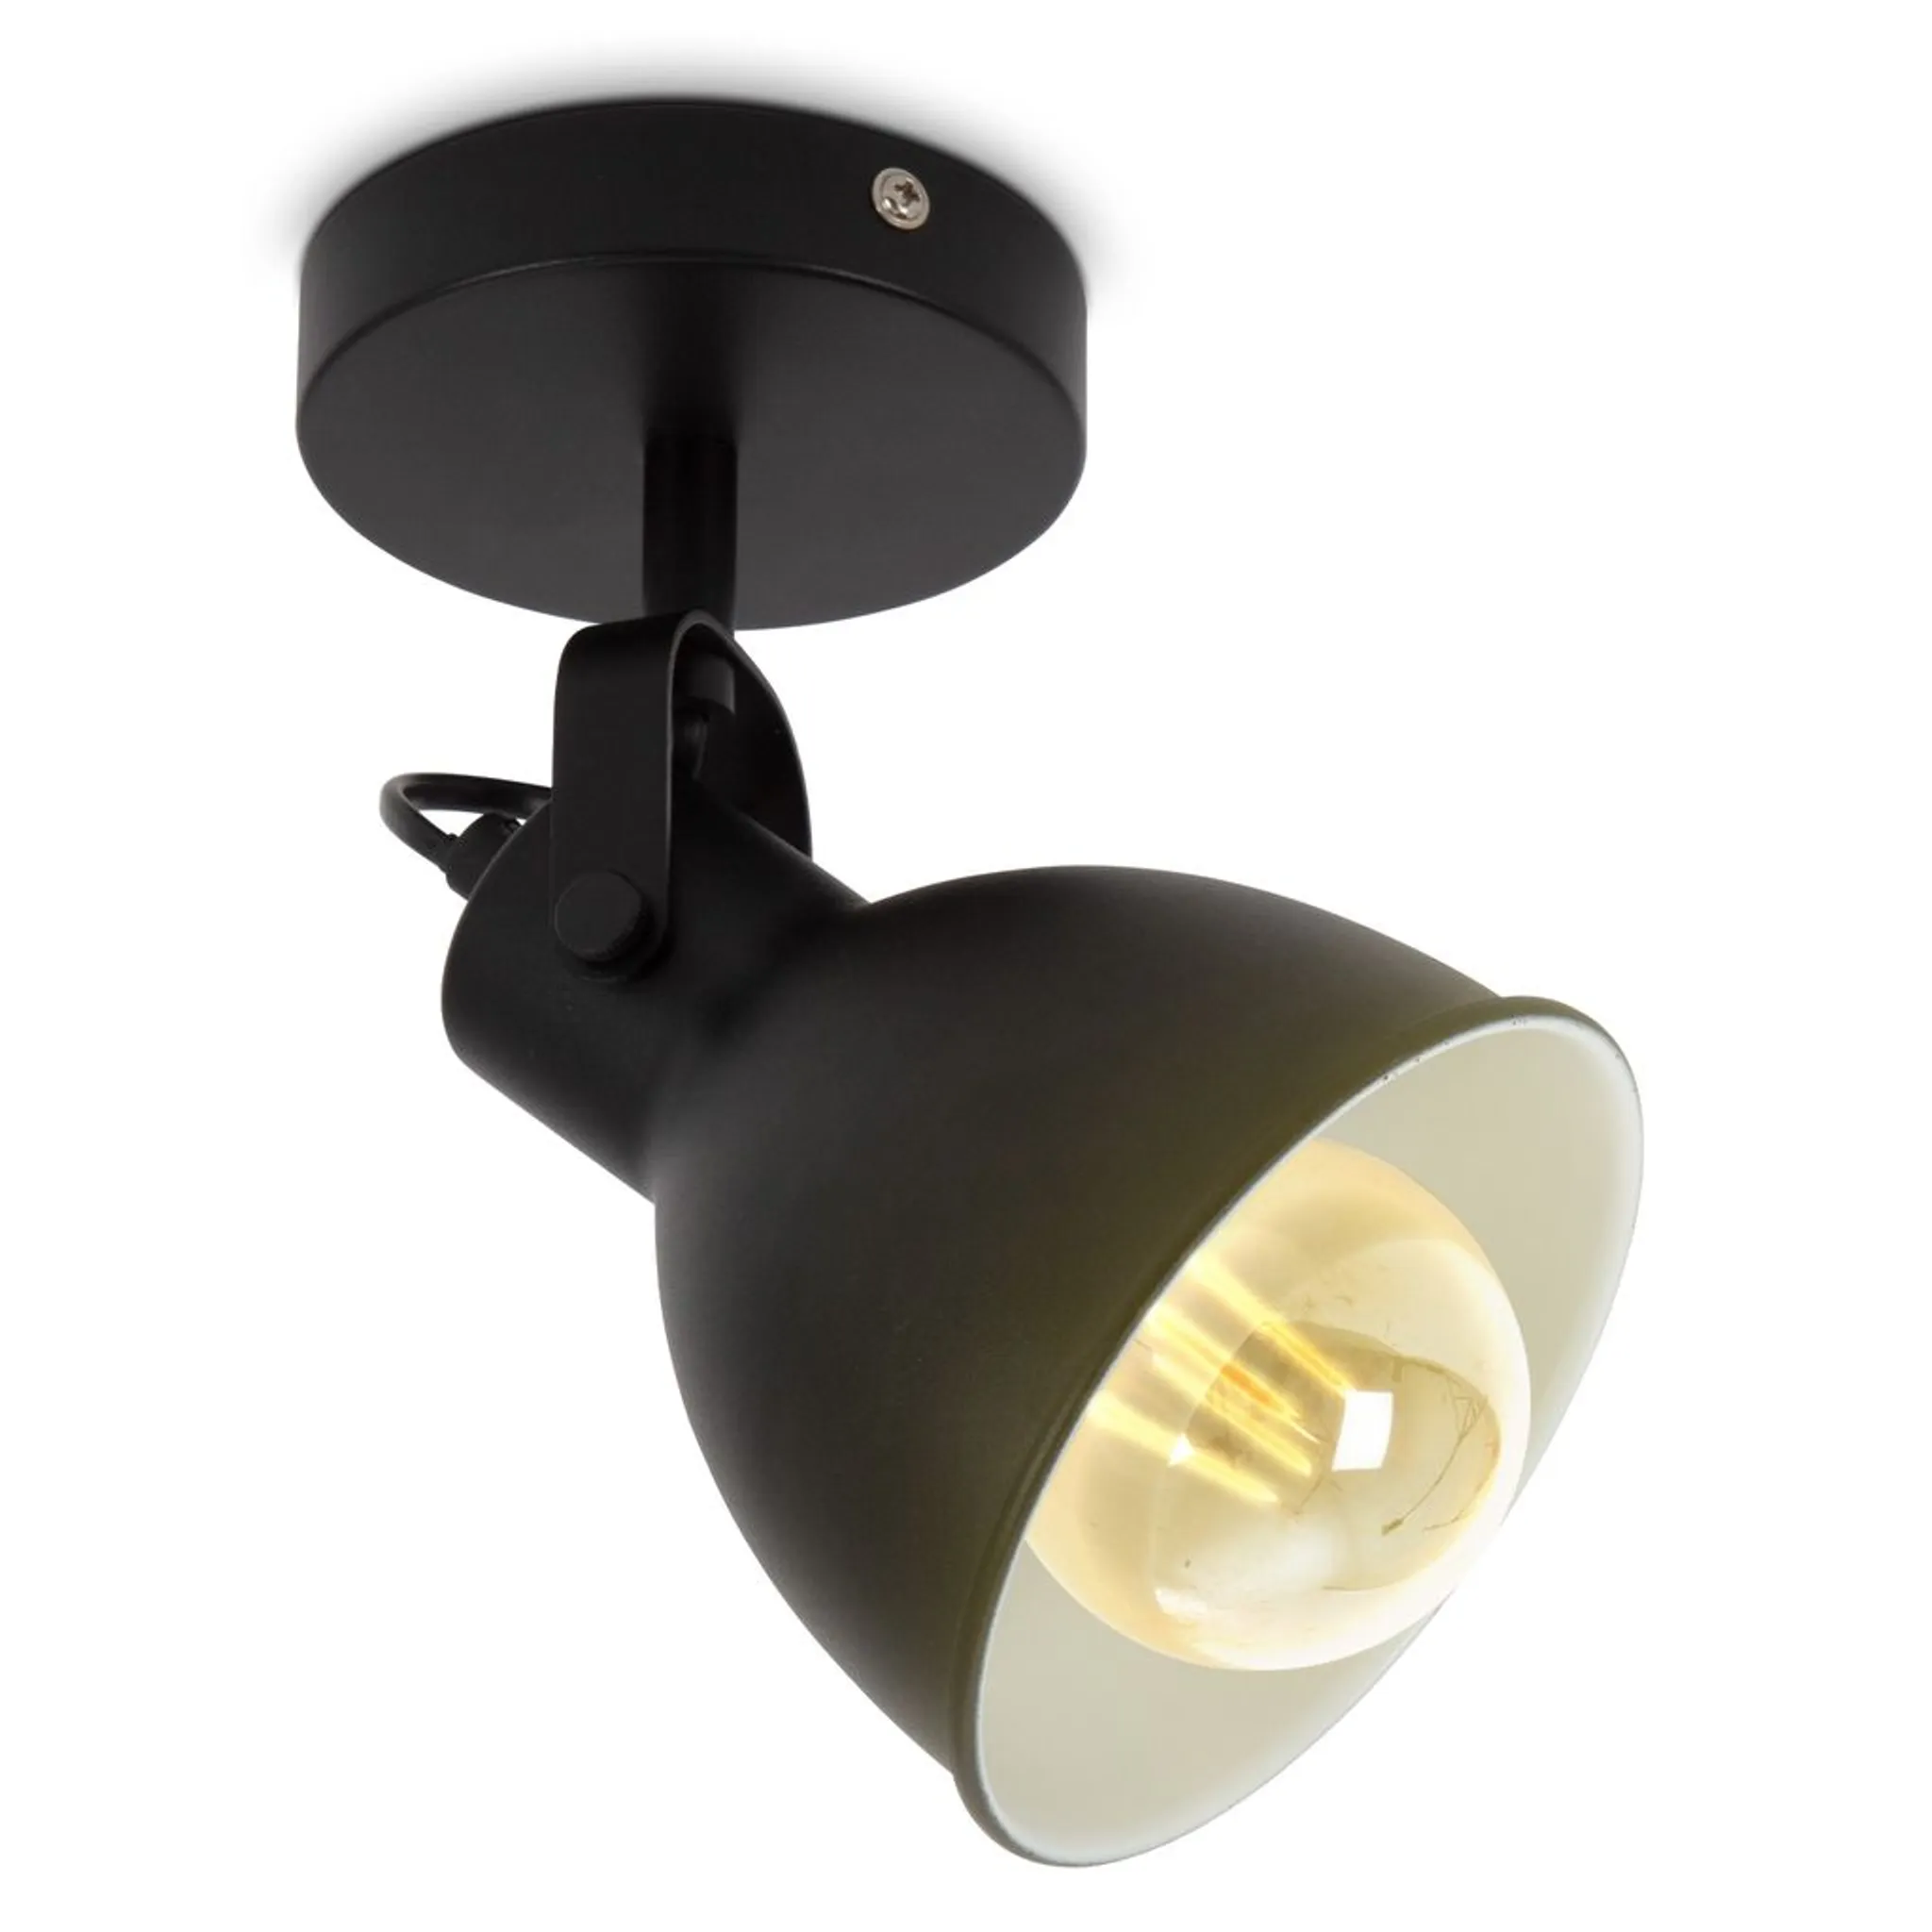 Vintage Industrial Design LED schwarz Wandlampe matt Wandleuchte Retro Spot E27